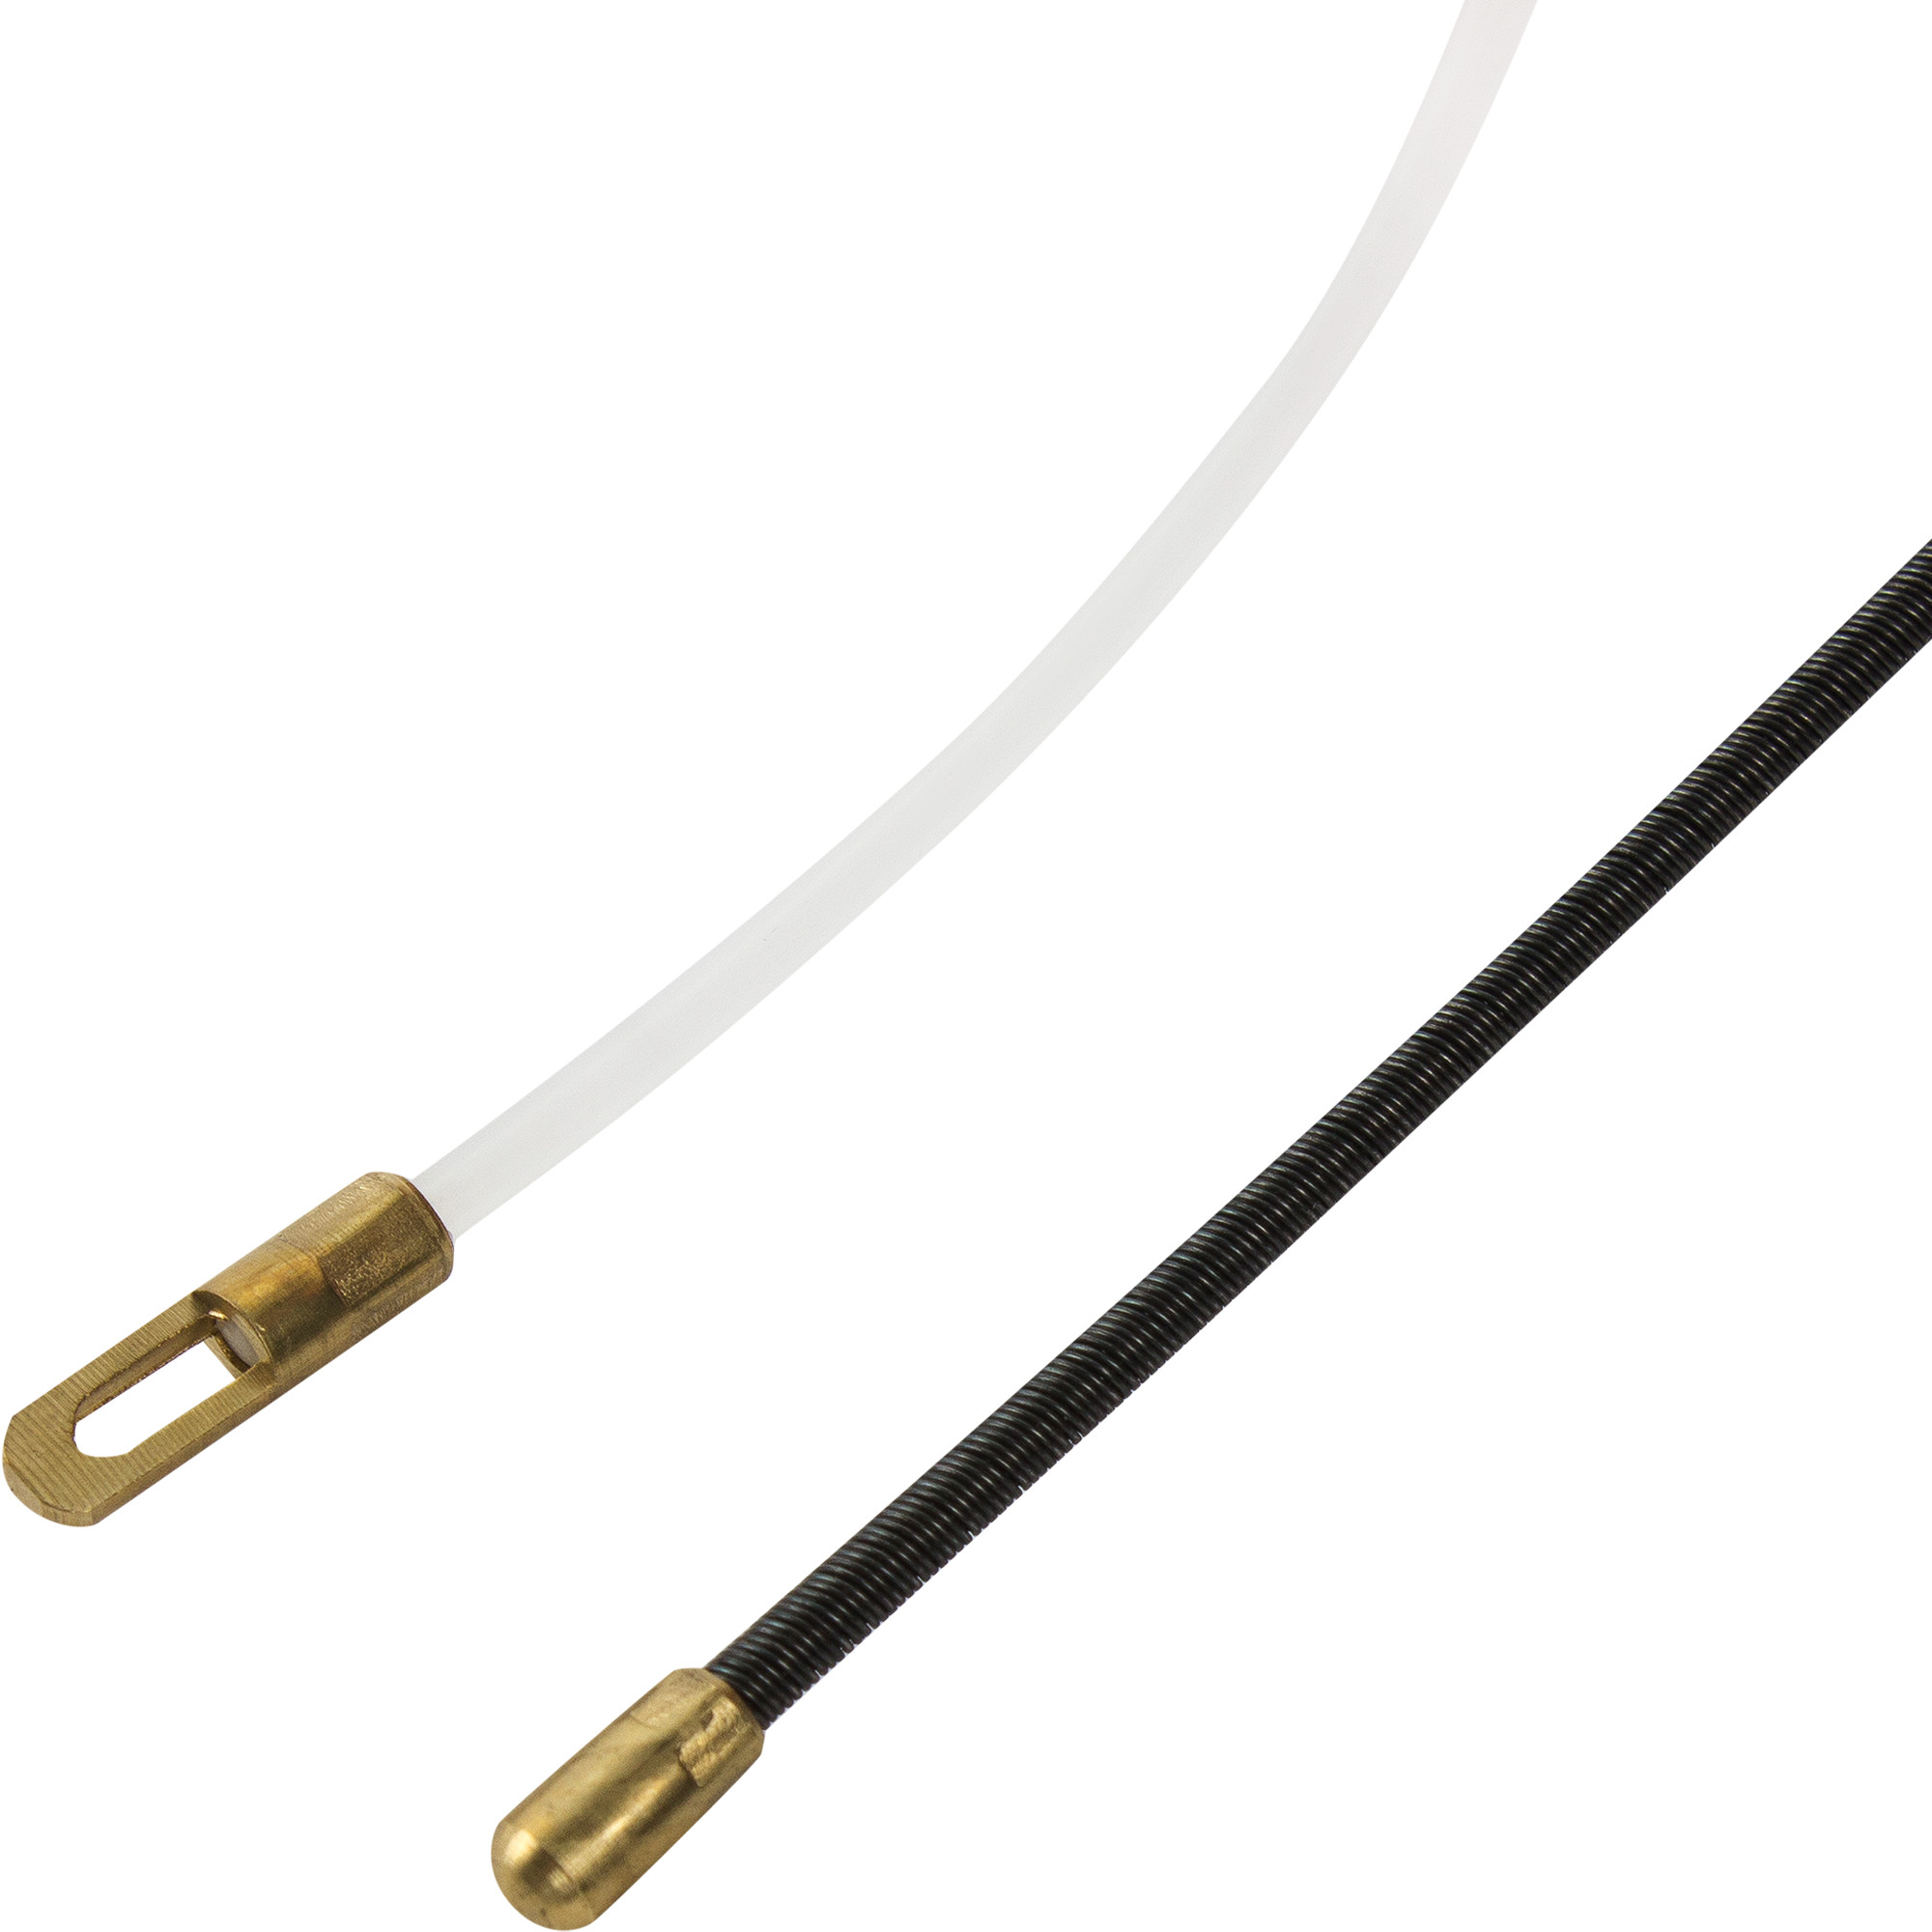 Зонд для протяжки кабеля Экопласт 10 м –   по цене 2830 .